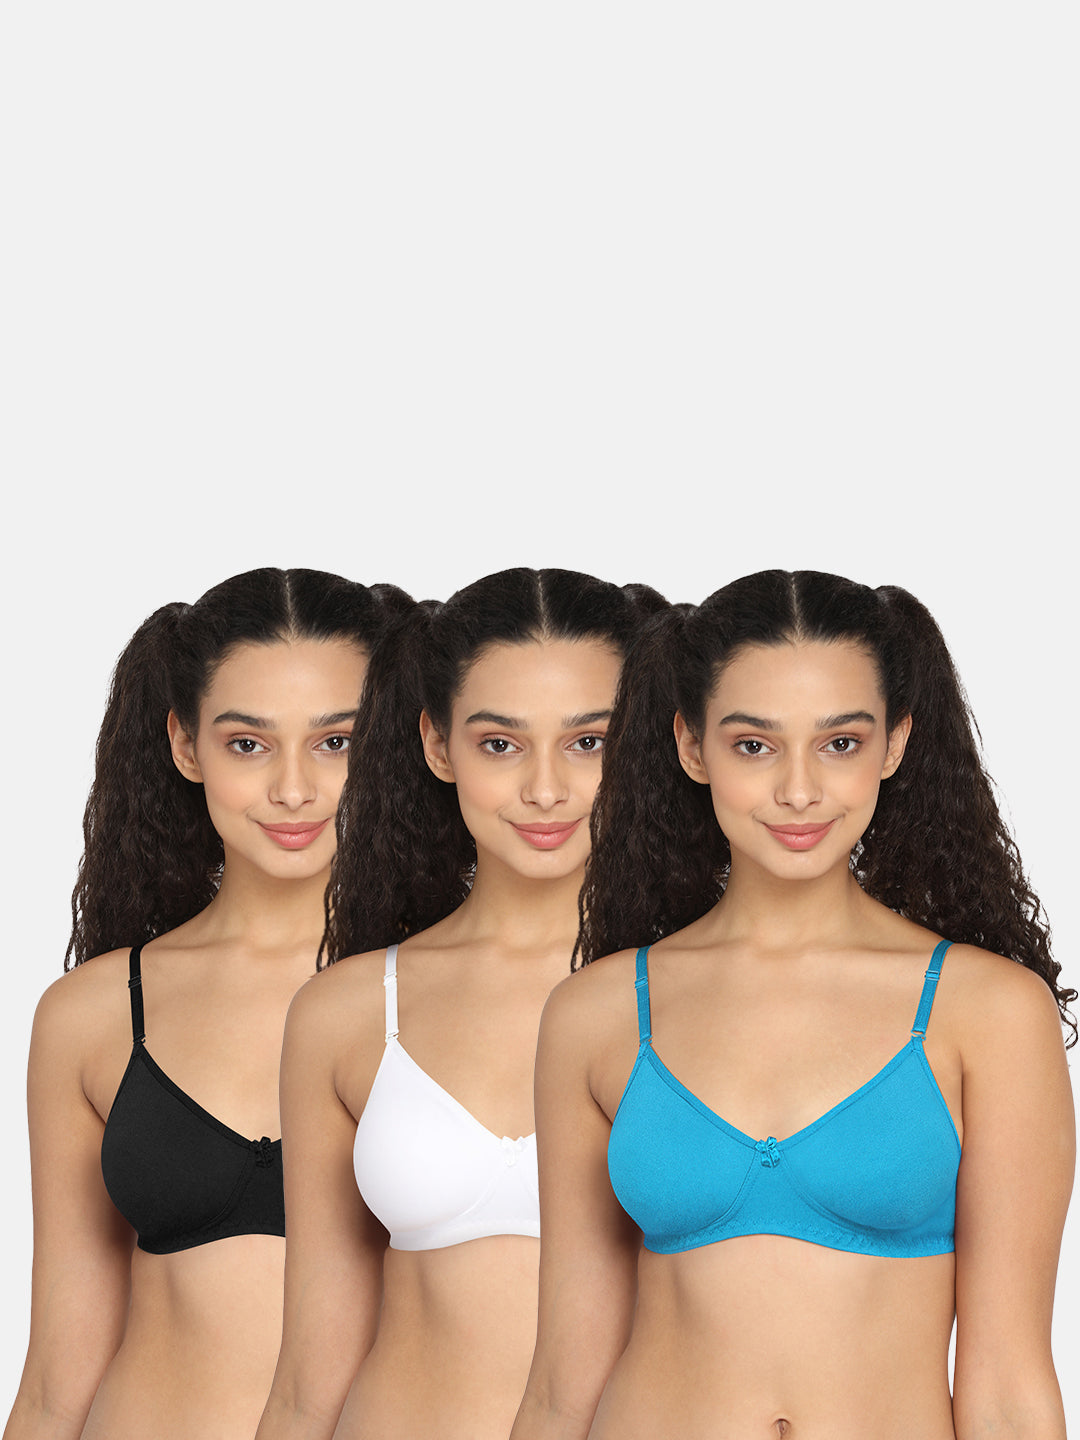 36 C Bras for Women - Buy 36 C Size Bra Online in India